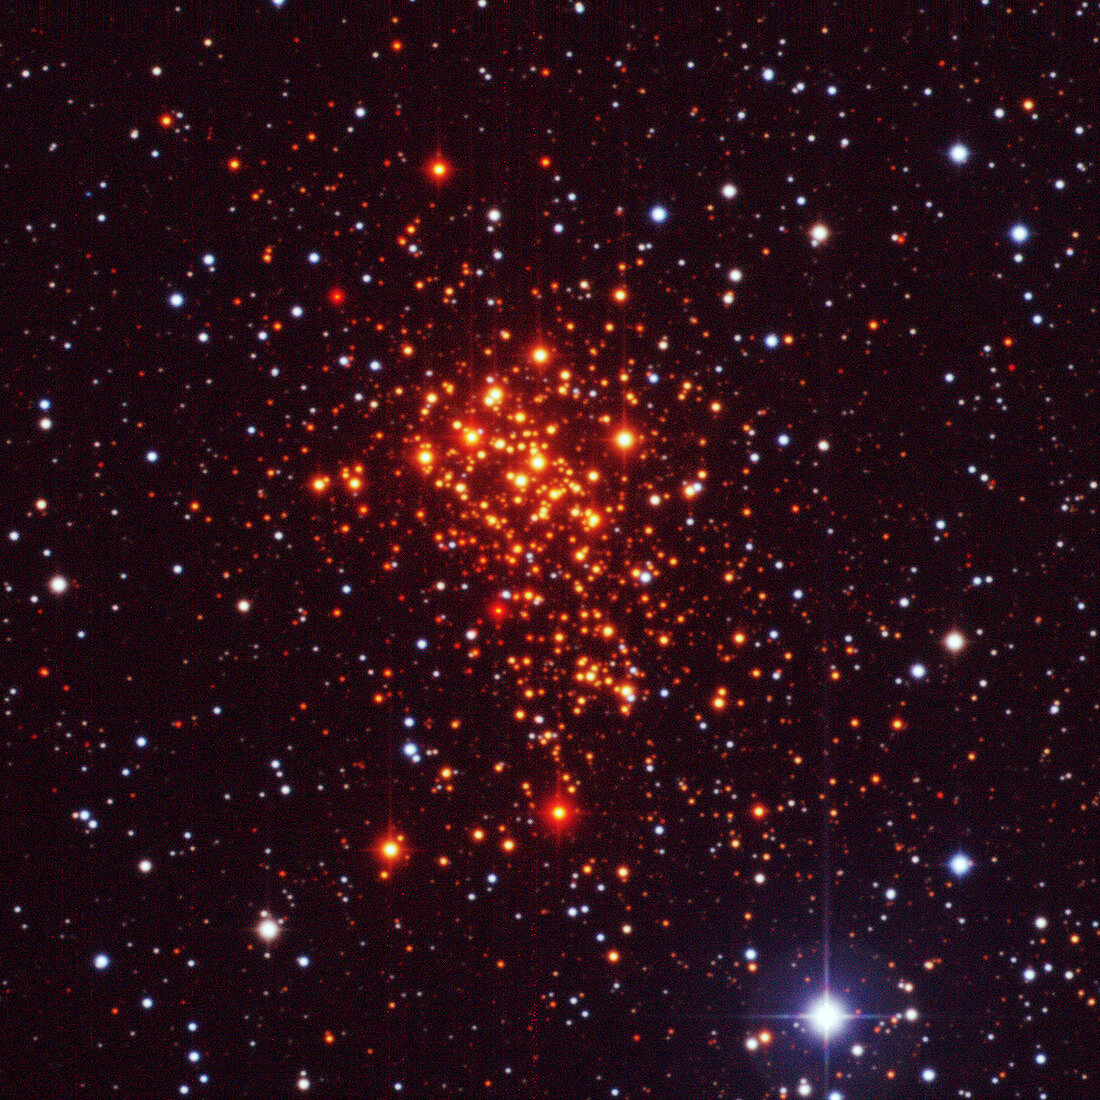 Super star cluster Westerlund 1